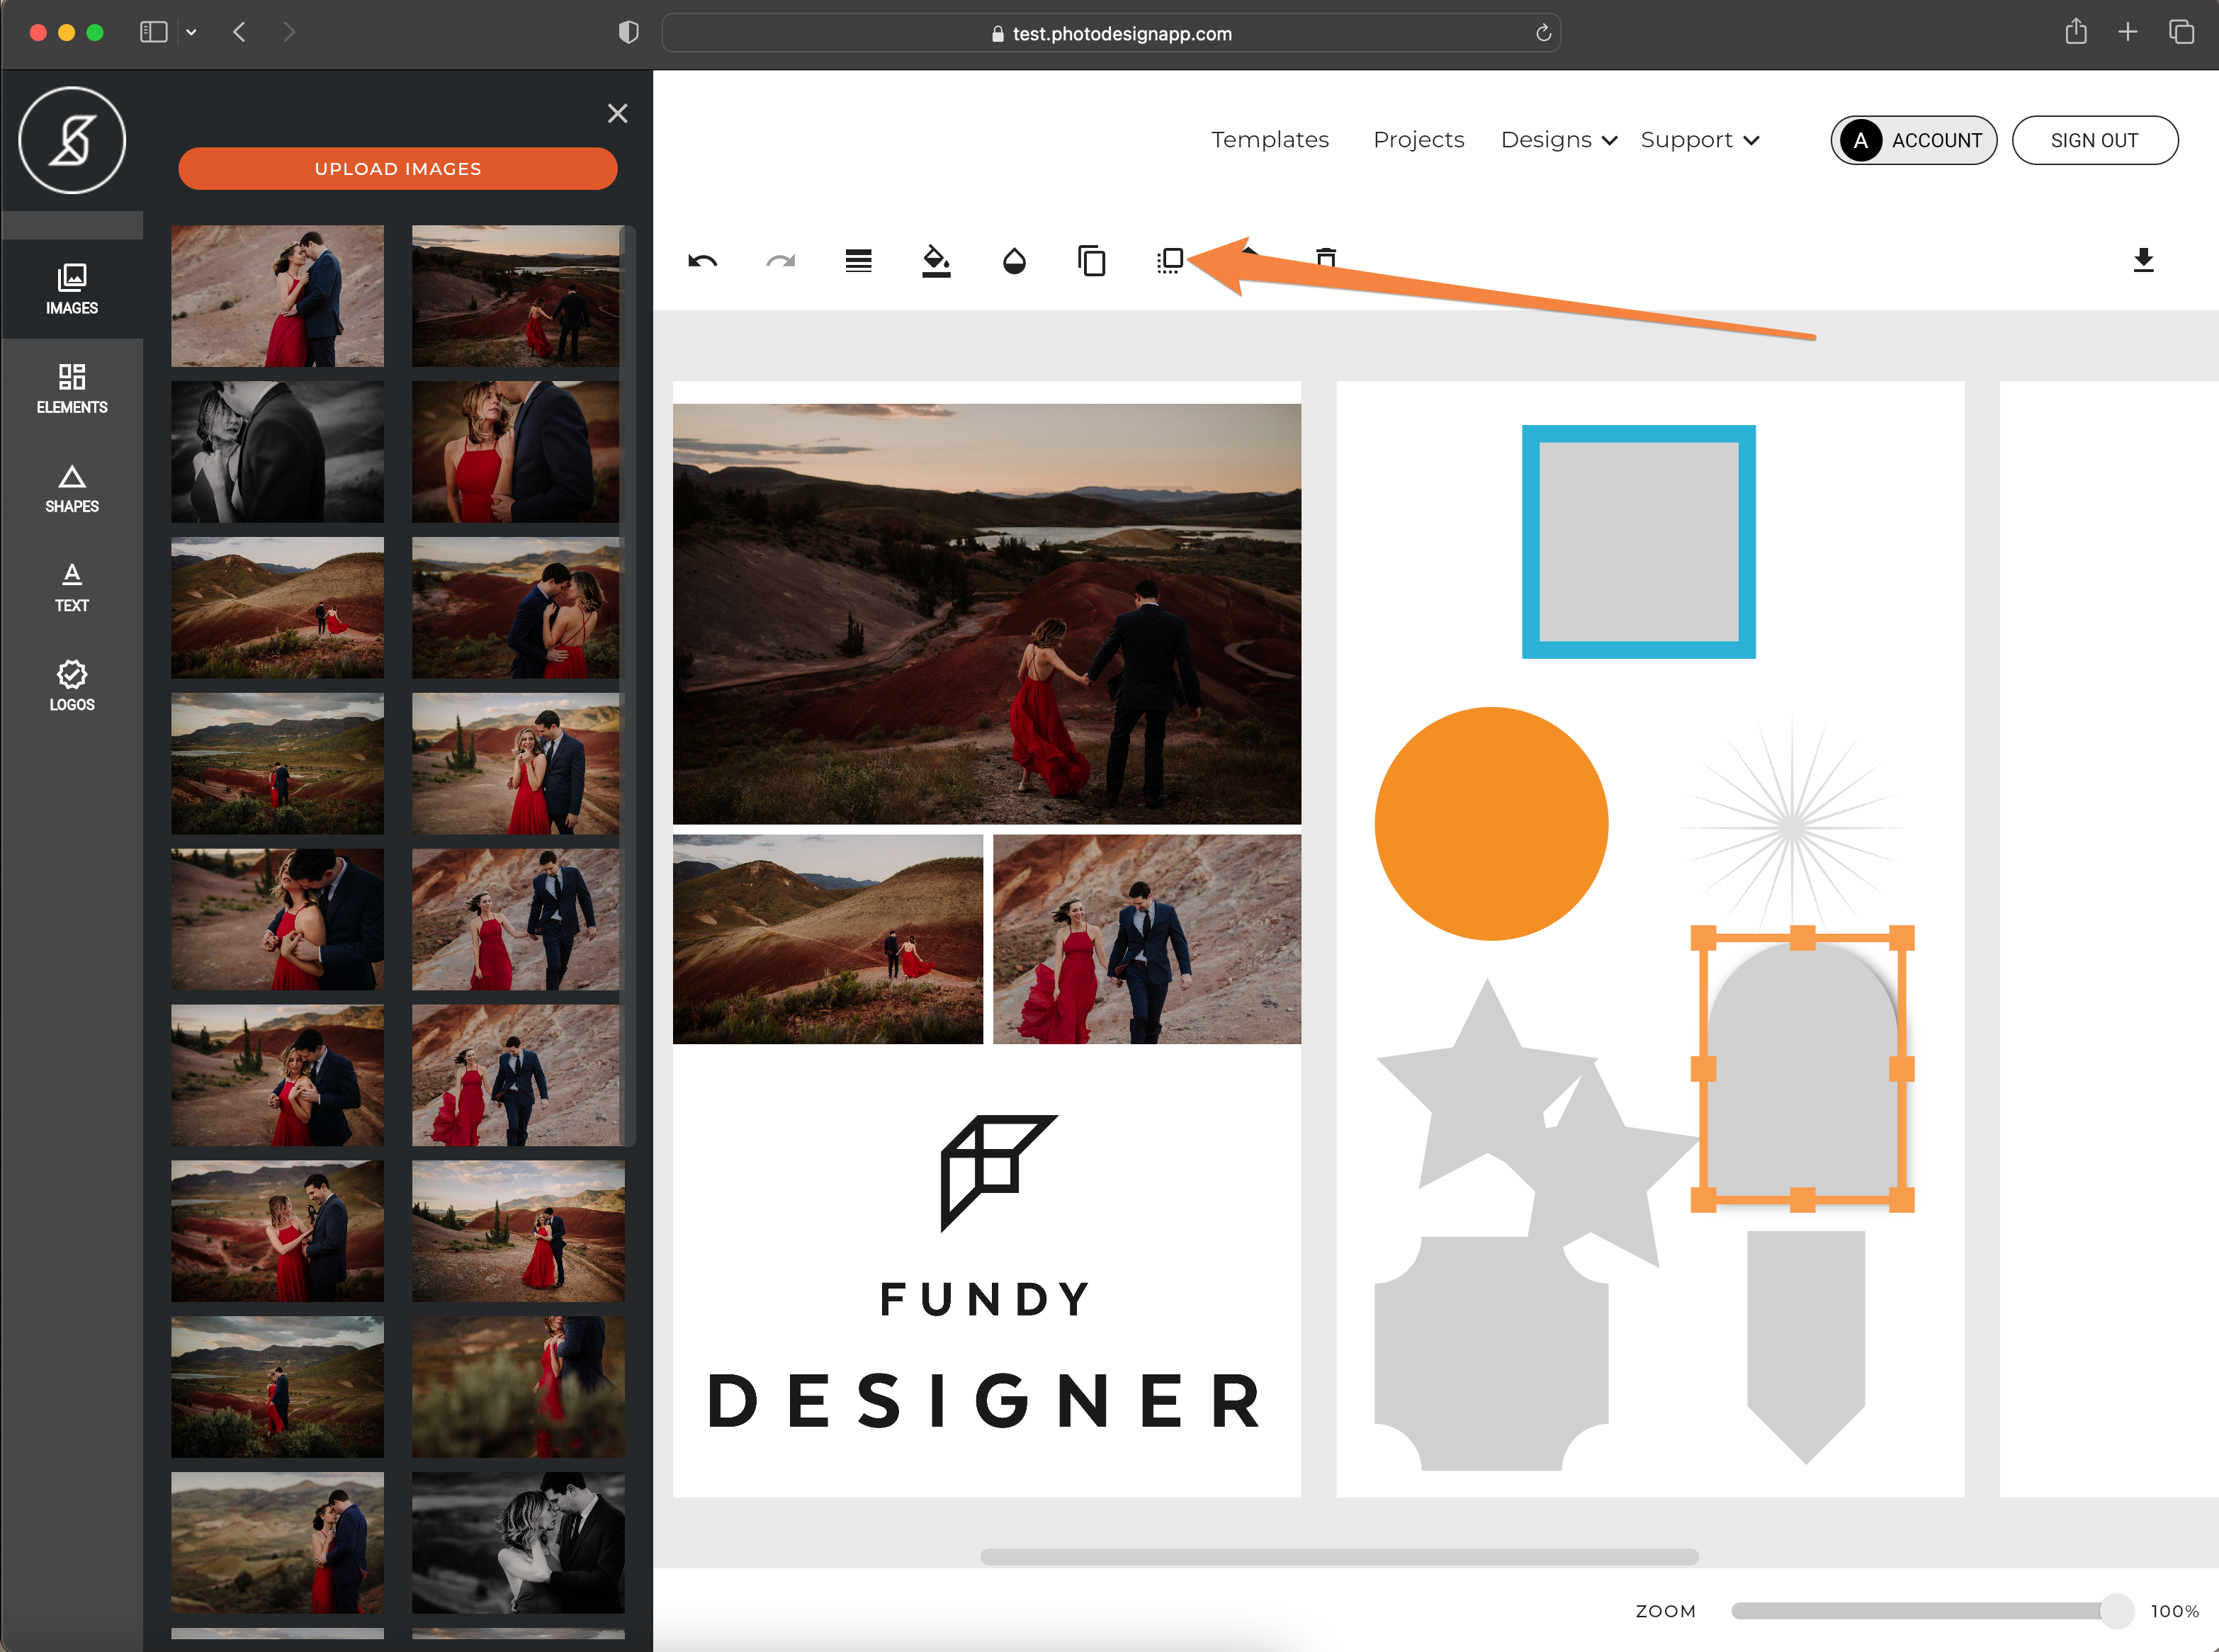 Social_Design_App_and_Screenshots.png